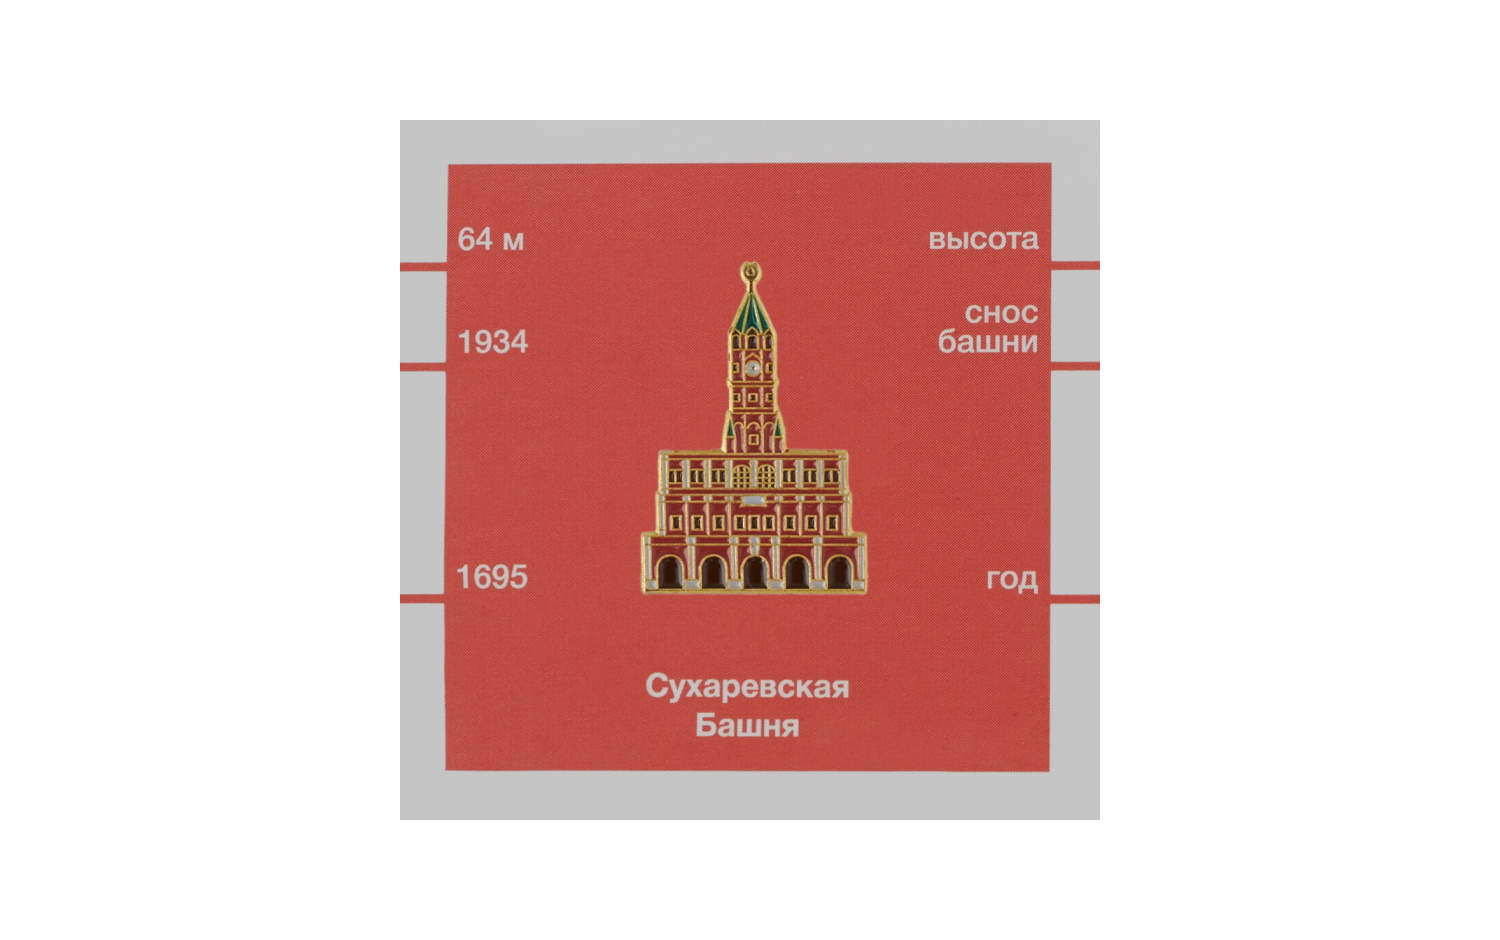 Значок Heart of Moscow — Сухаревская башня